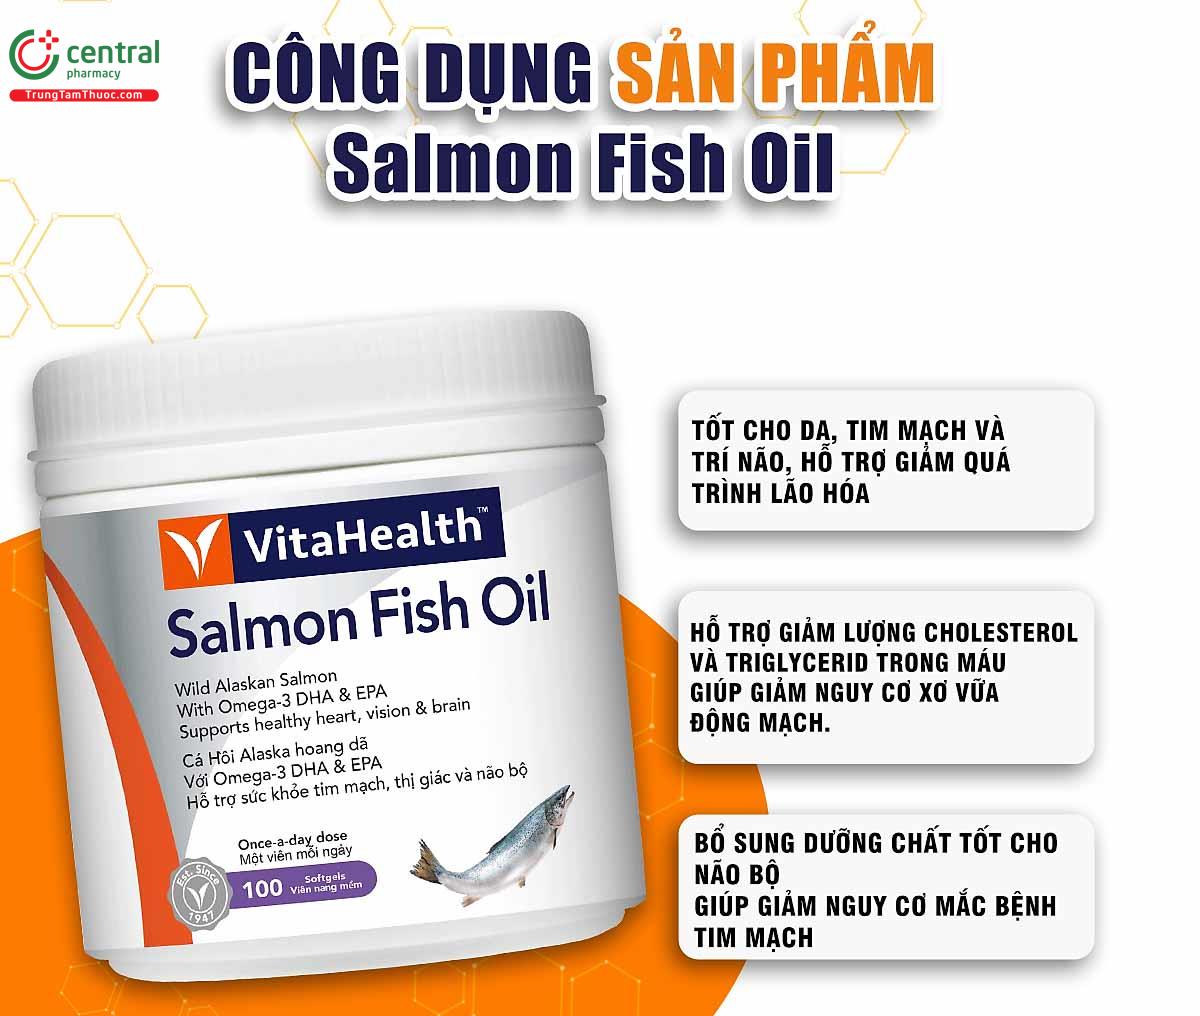 VitaHealth Salmon Fish Oil 100 viên ngừa xơ vữa động mạch